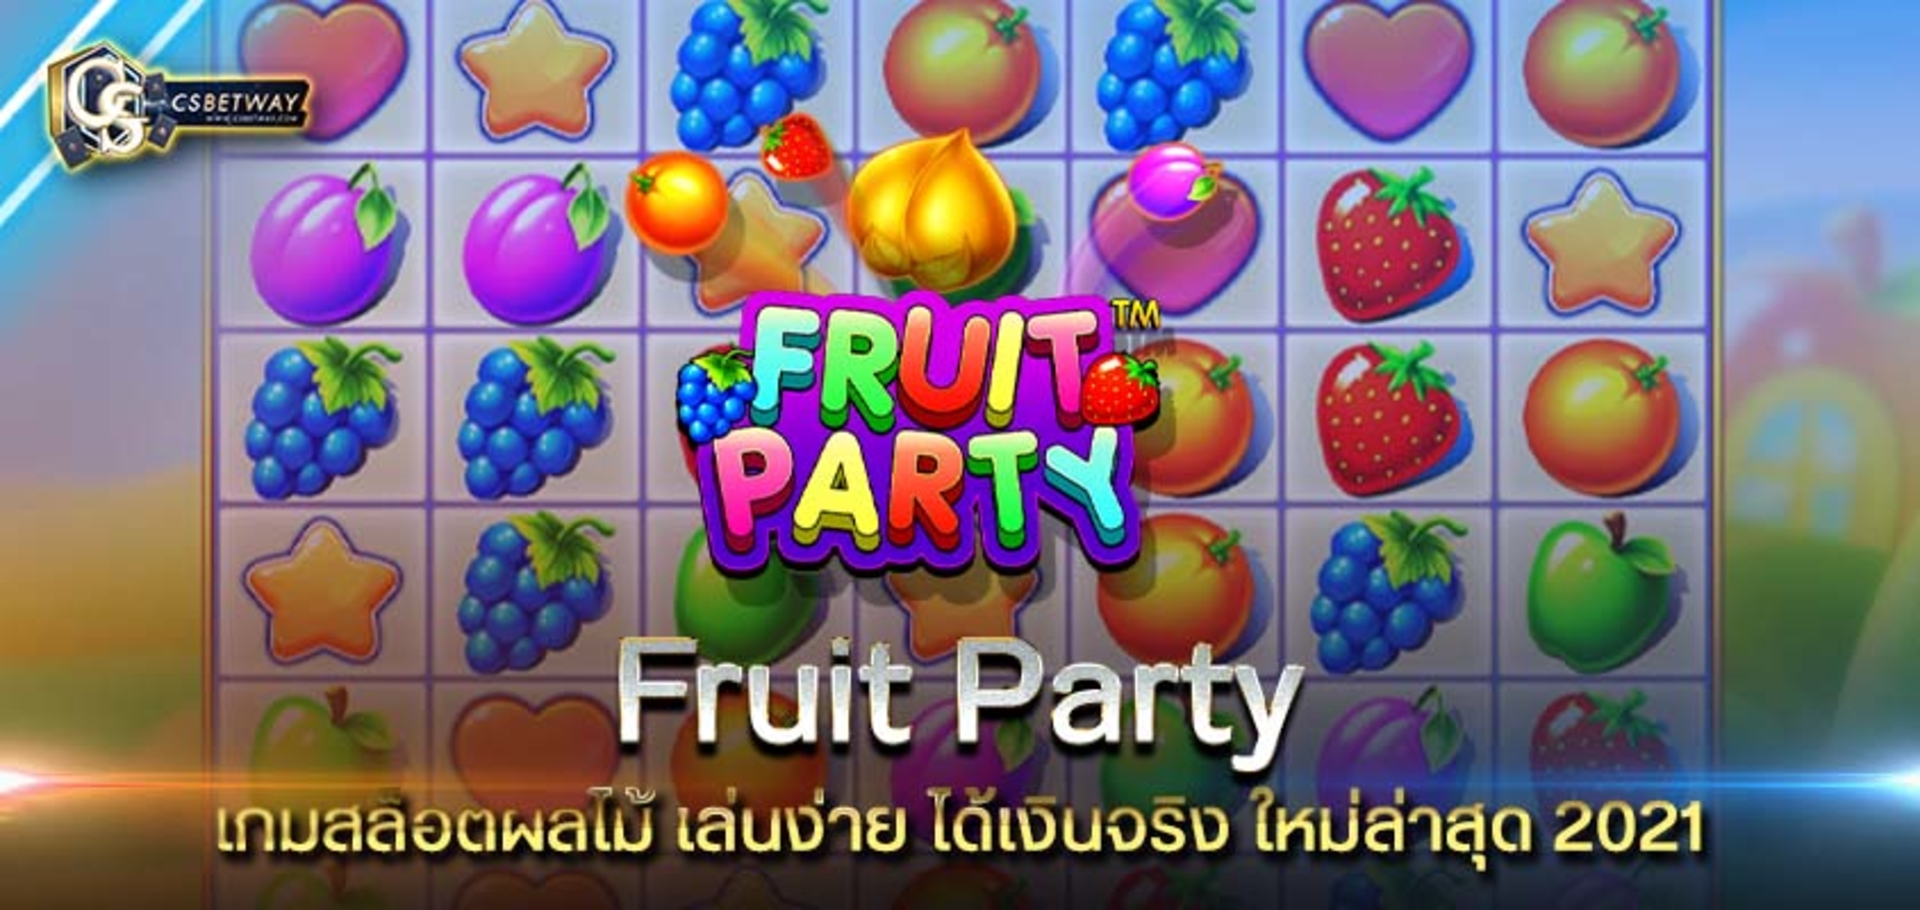 ทางเข้าเล่น Fruit Party เกมสล็อตผลไม้ เล่นง่าย ได้เงินจริง ใหม่ล่าสุด 2021